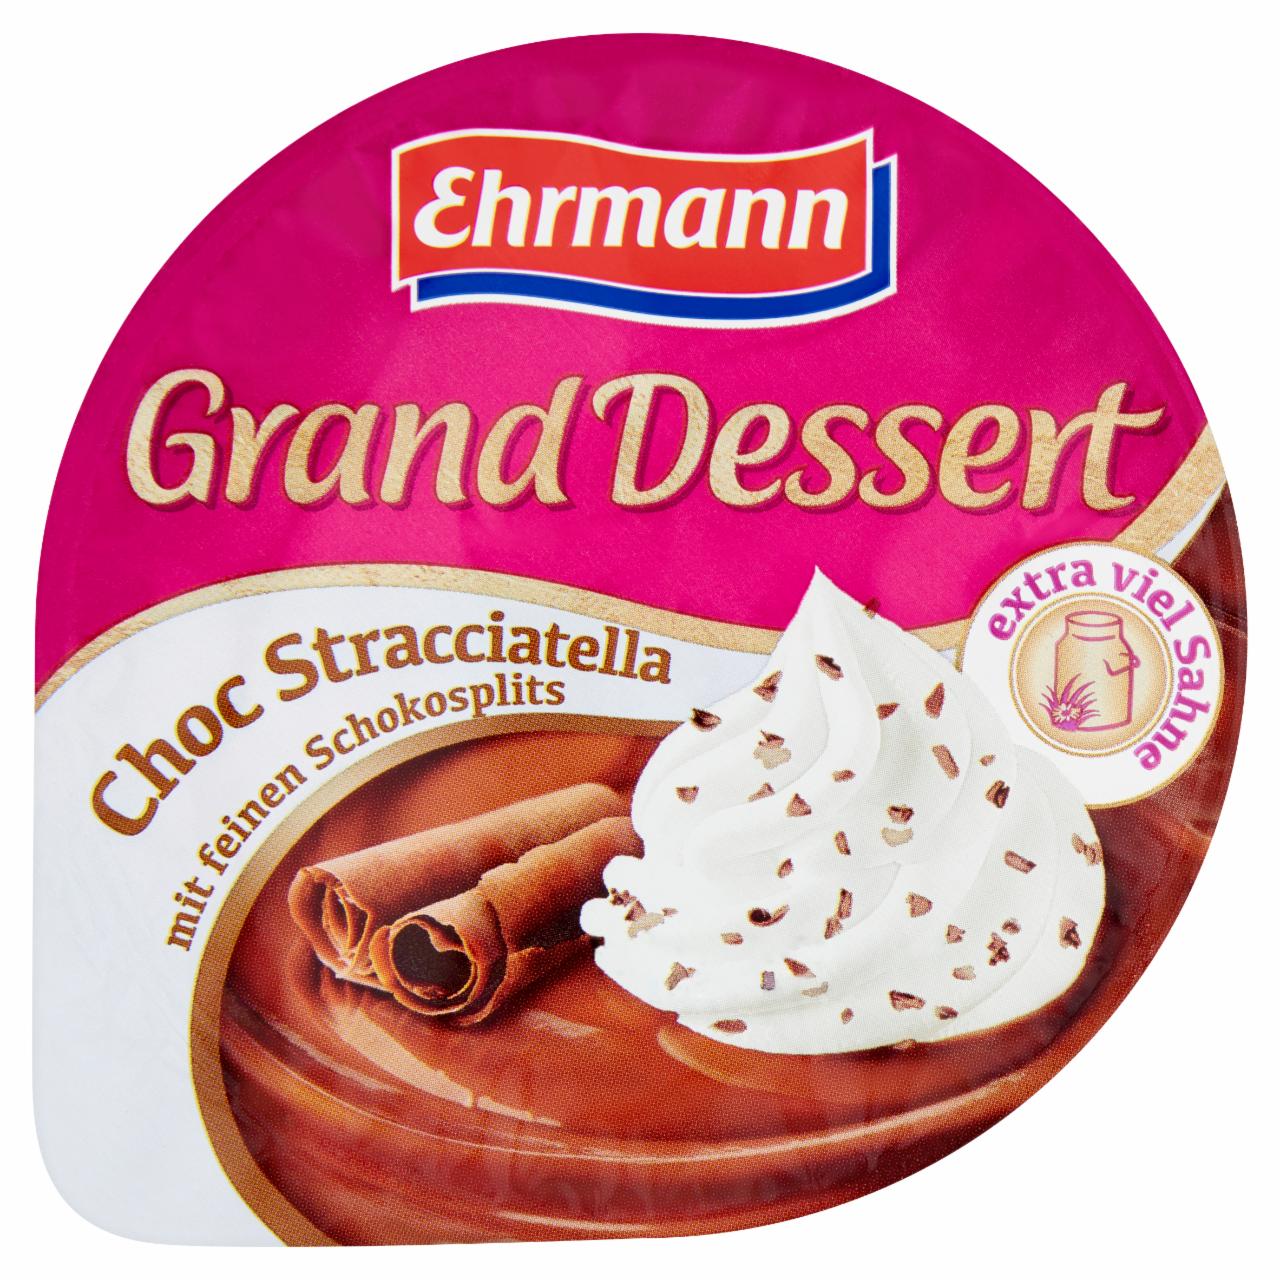 Képek - Ehrmann Grand Dessert sztracsatella ízű puding tejszínhabbal 190 g